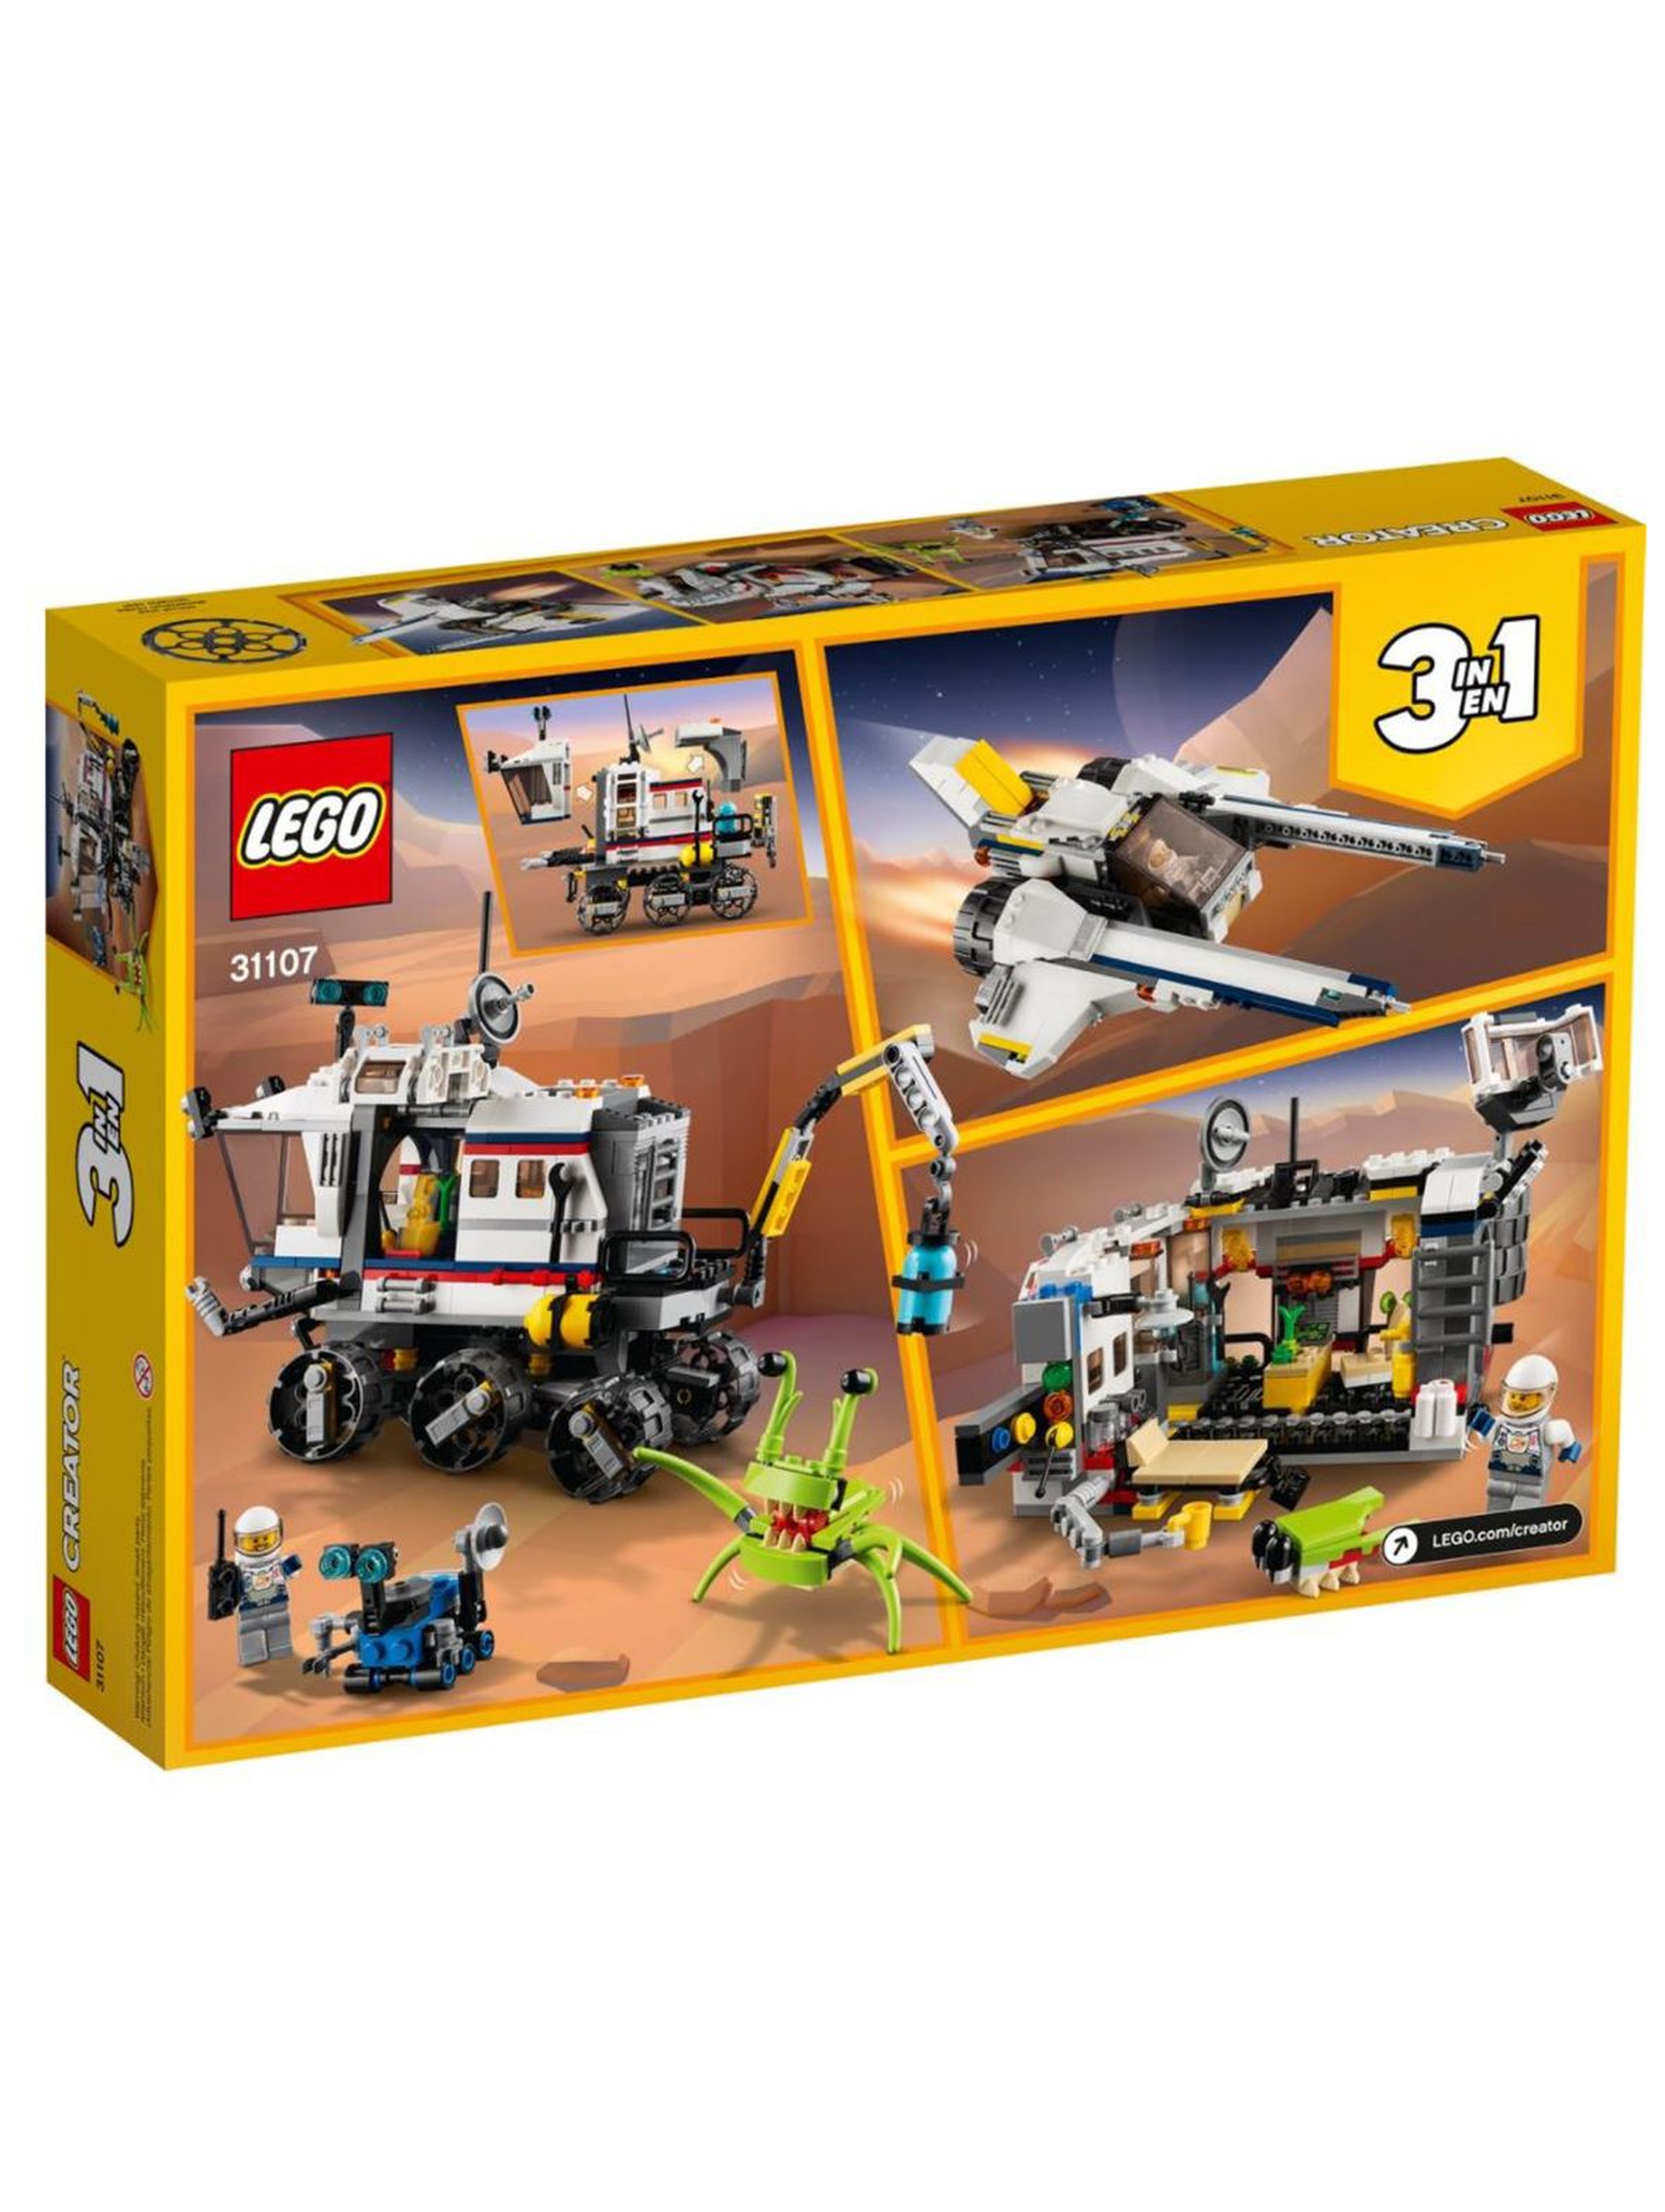 Lego Creator - Łazik kosmiczny 3w1 - 510 elementów wiek 8+